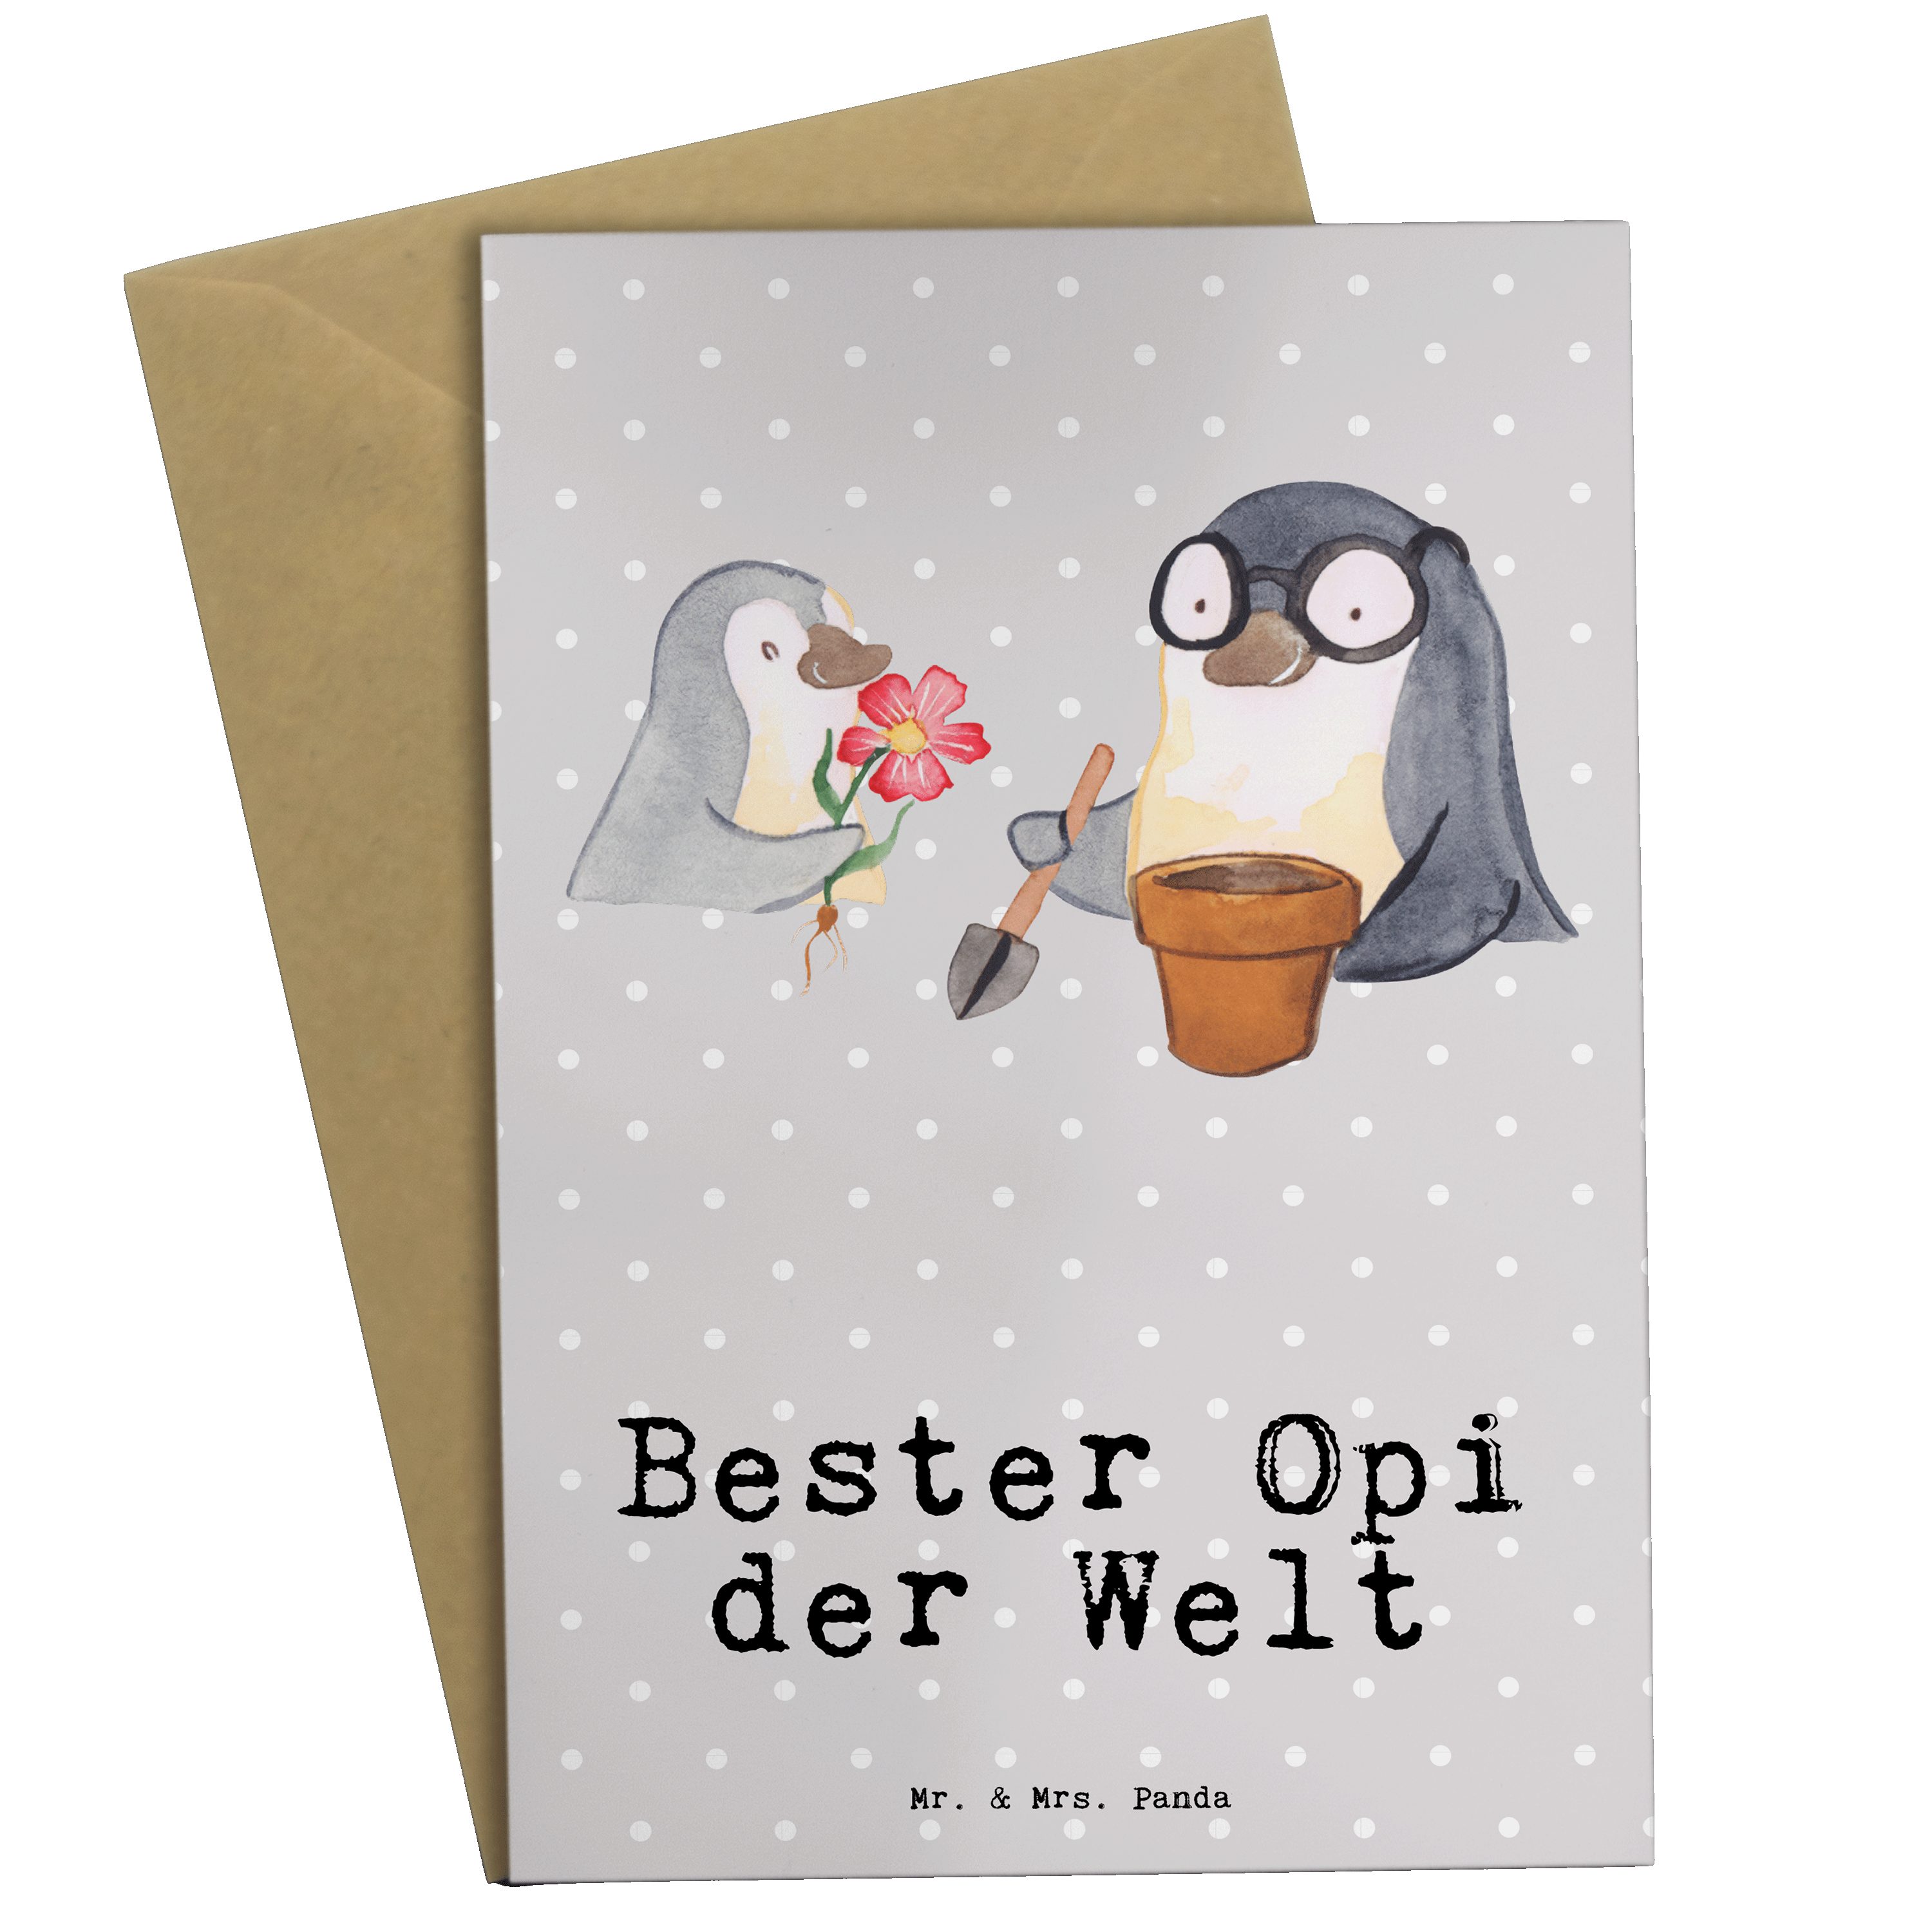 Mr. & Mrs. Panda Grau - Welt Bester Opi Geschenk, der Oppi, Pastell Grußkarte Hochzeit - Pinguin